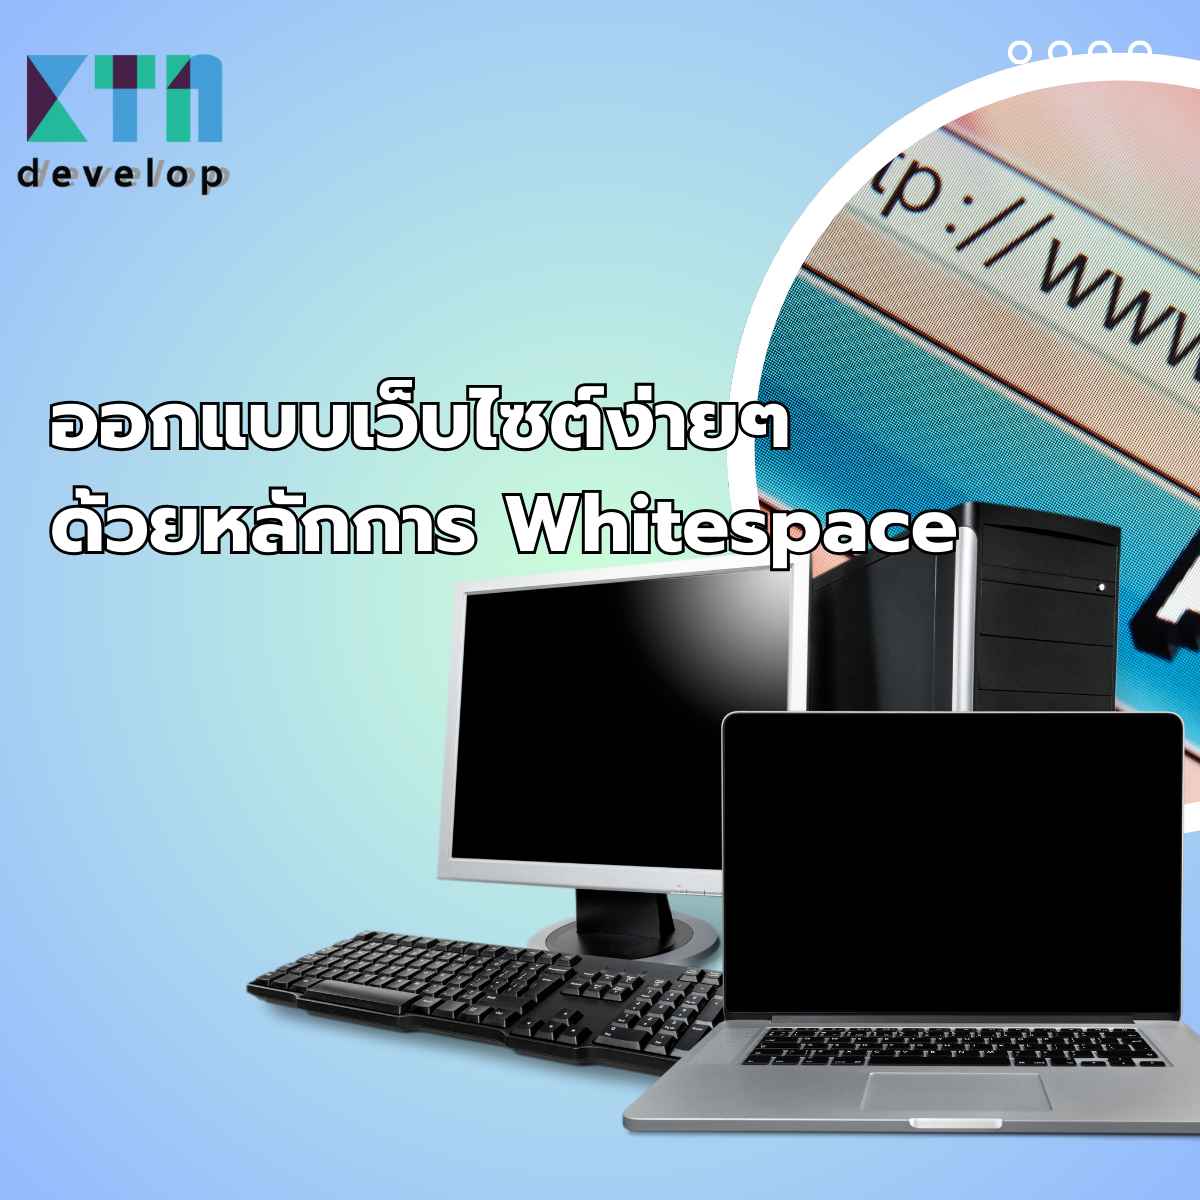 ออกแบบเว็บไซต์ง่ายๆด้วยหลักการ Whitespace (1)_6